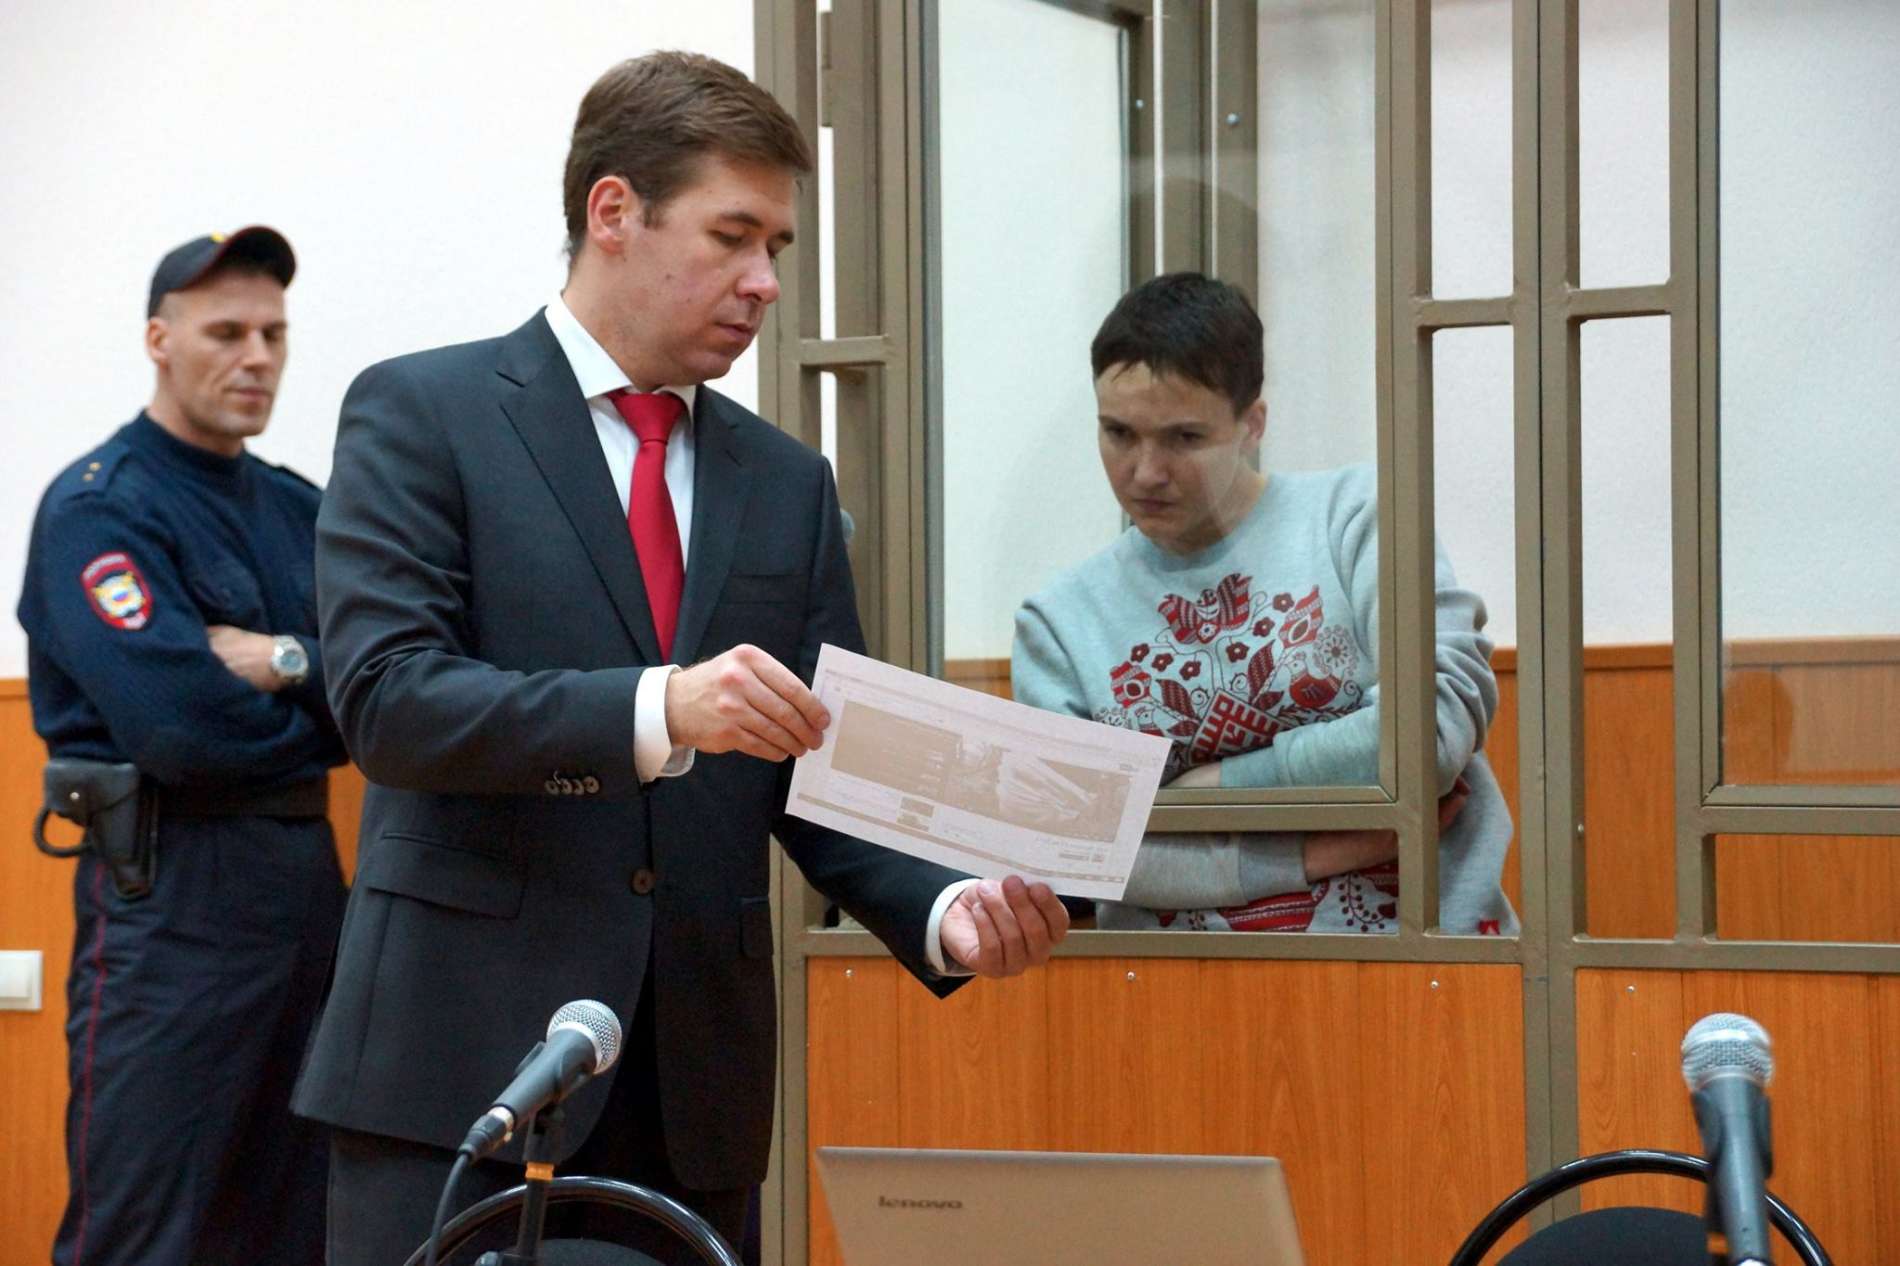 Влітку 2014-го «Айдар» не міг забрати поранену Савченко, бо не мав бронетехніки